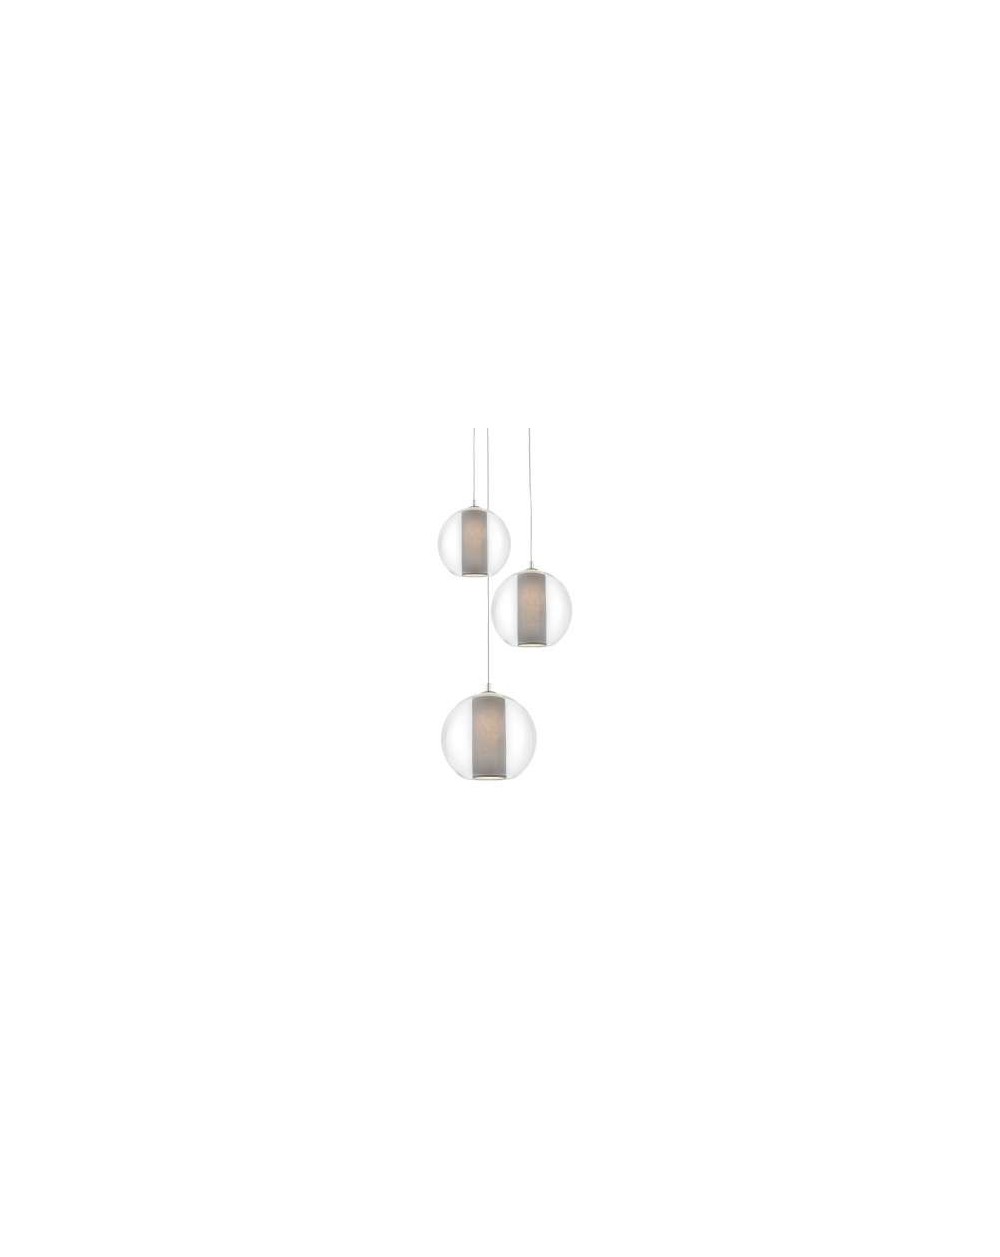 Lampa Merida Plafon 3 ze szklanych kul z szarymi tubami w środku - Kaspa